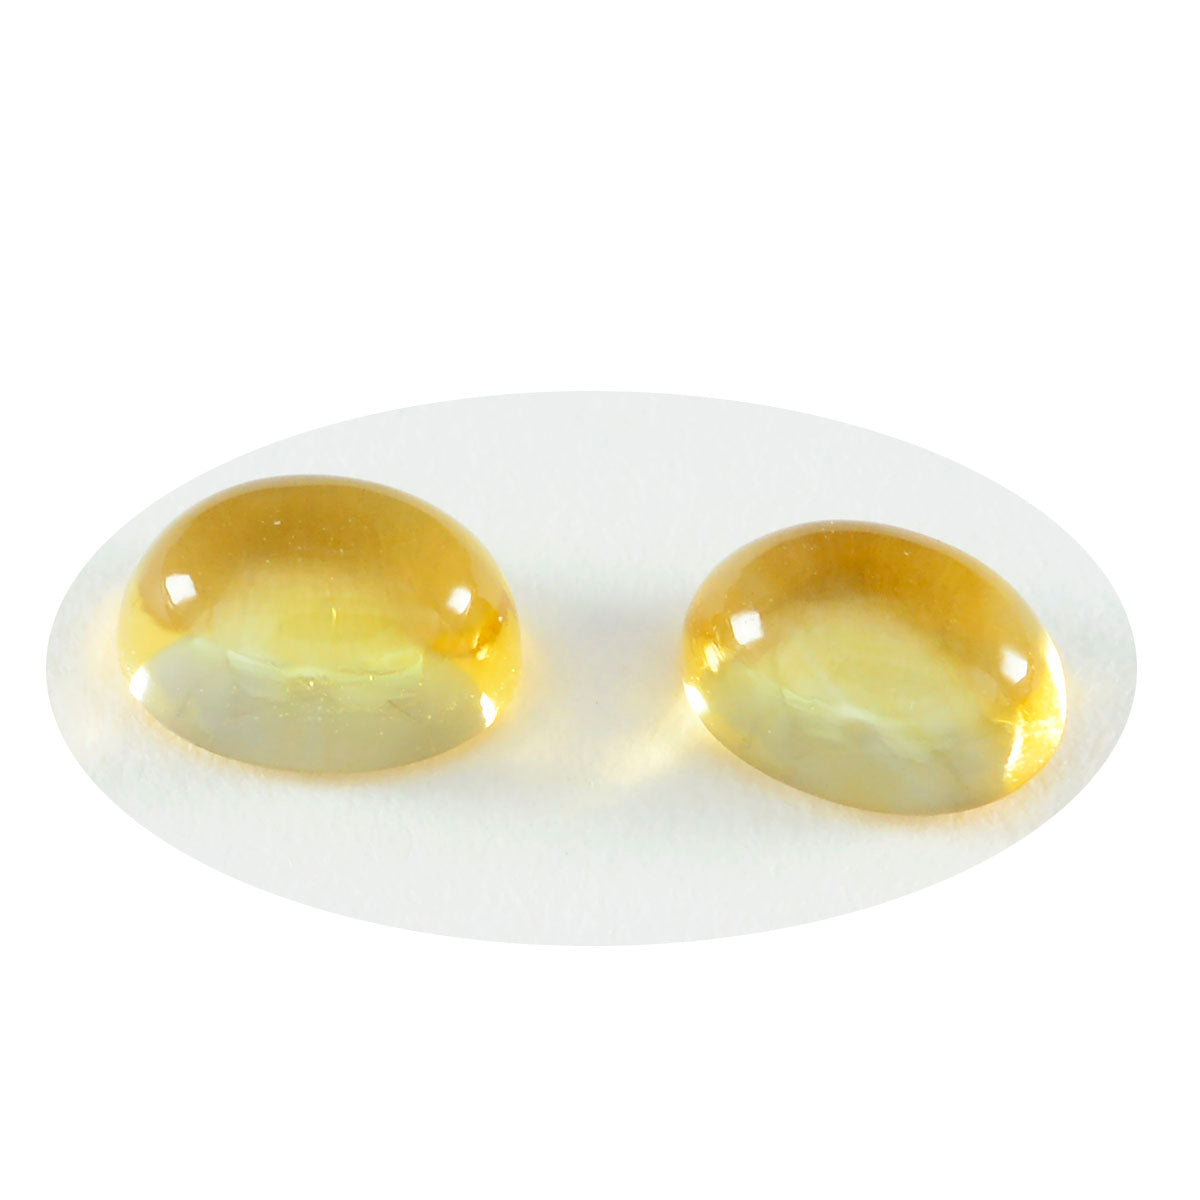 Riyogems, 1 pieza, cabujón de citrino amarillo, 12x16mm, forma ovalada, piedra suelta de calidad encantadora